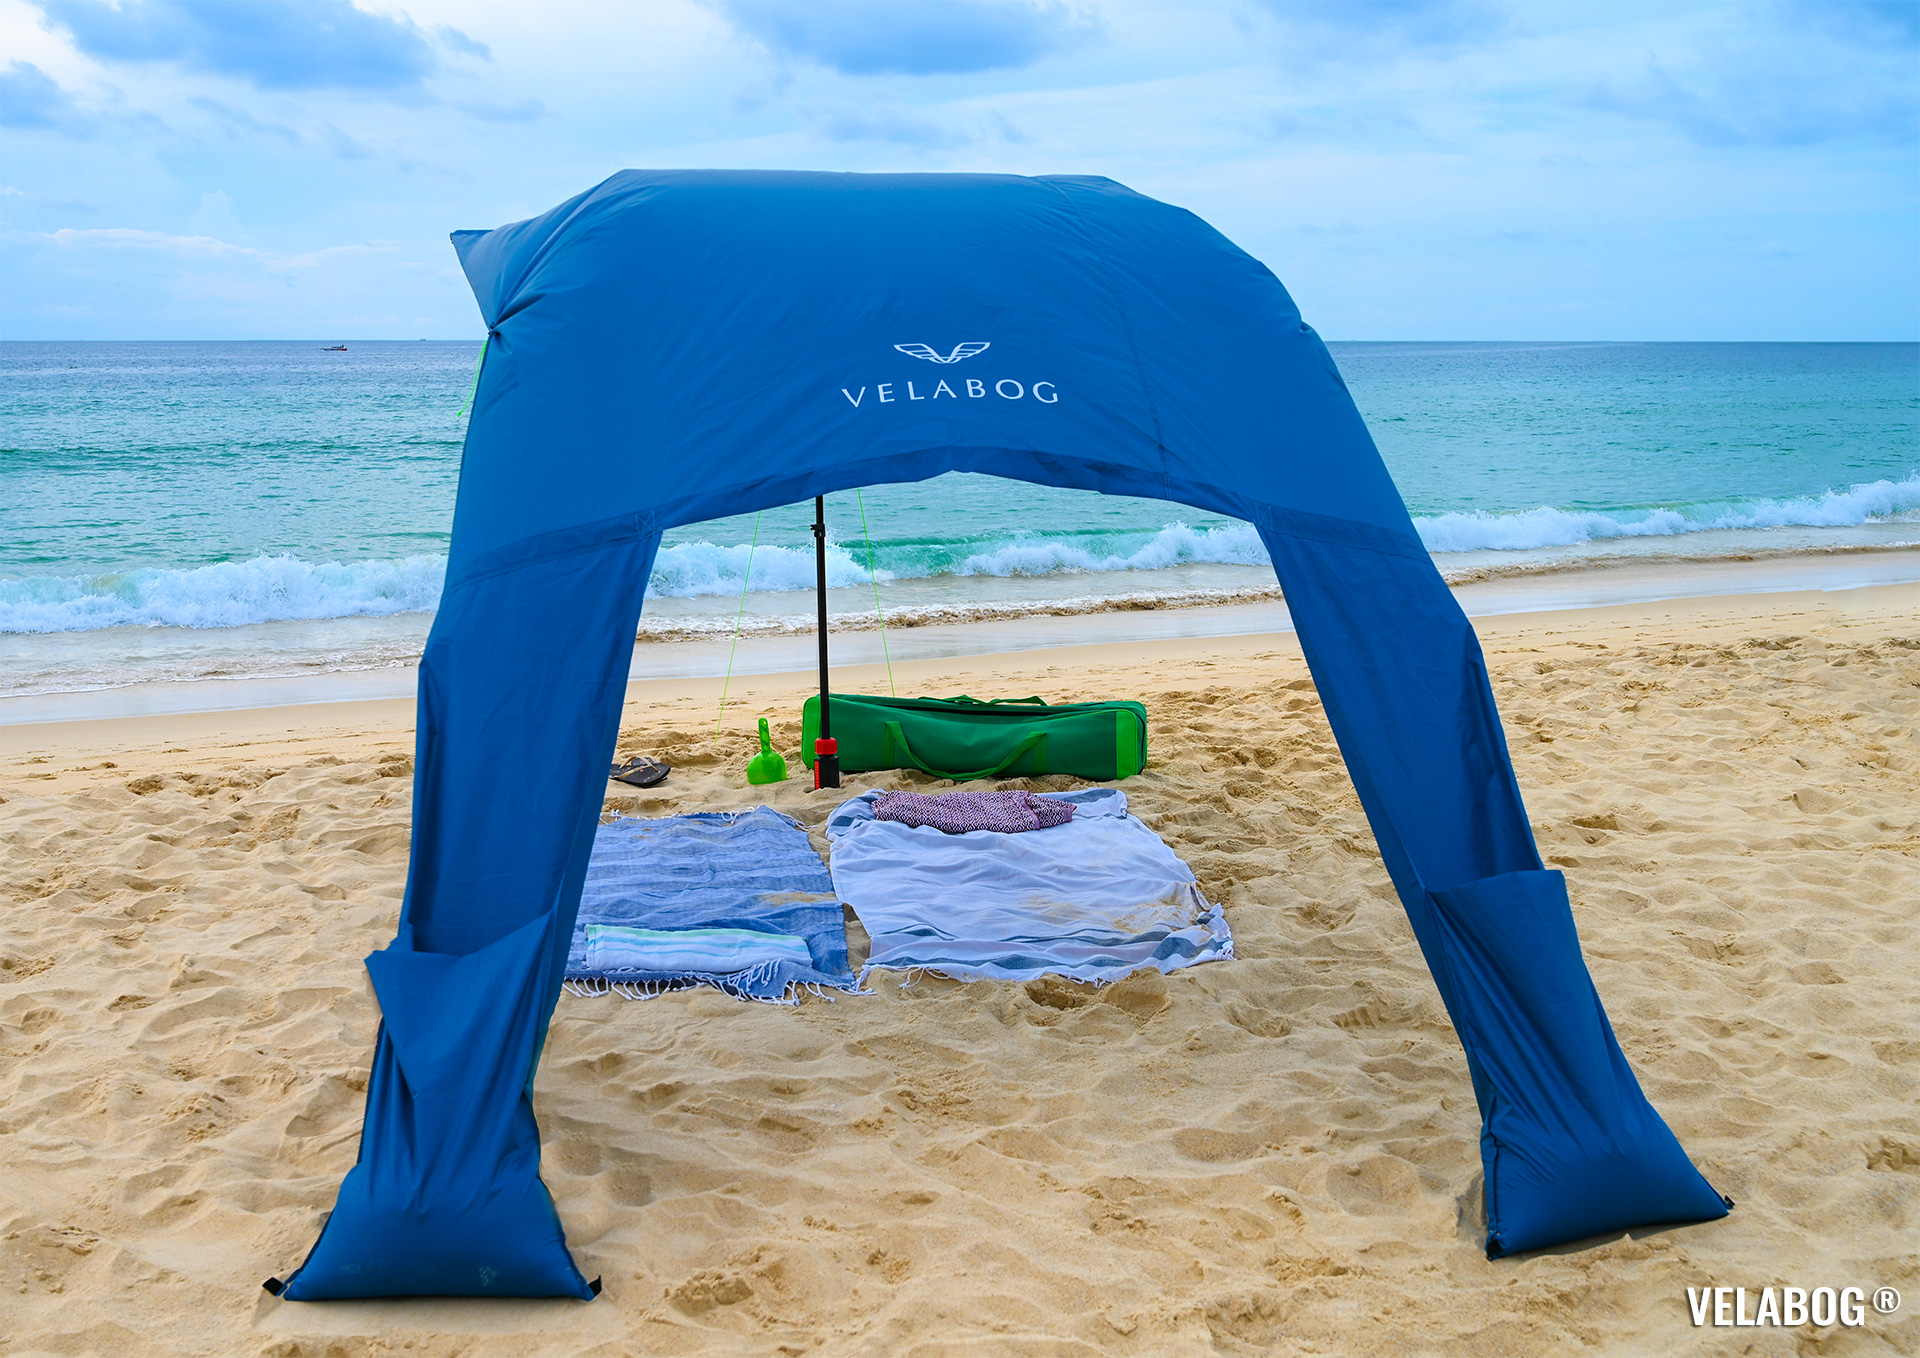 Ombrellone vela da sole Velabog Breeze sulla spiaggia. La migliore tende sulla spiaggia, alta e ariosa.